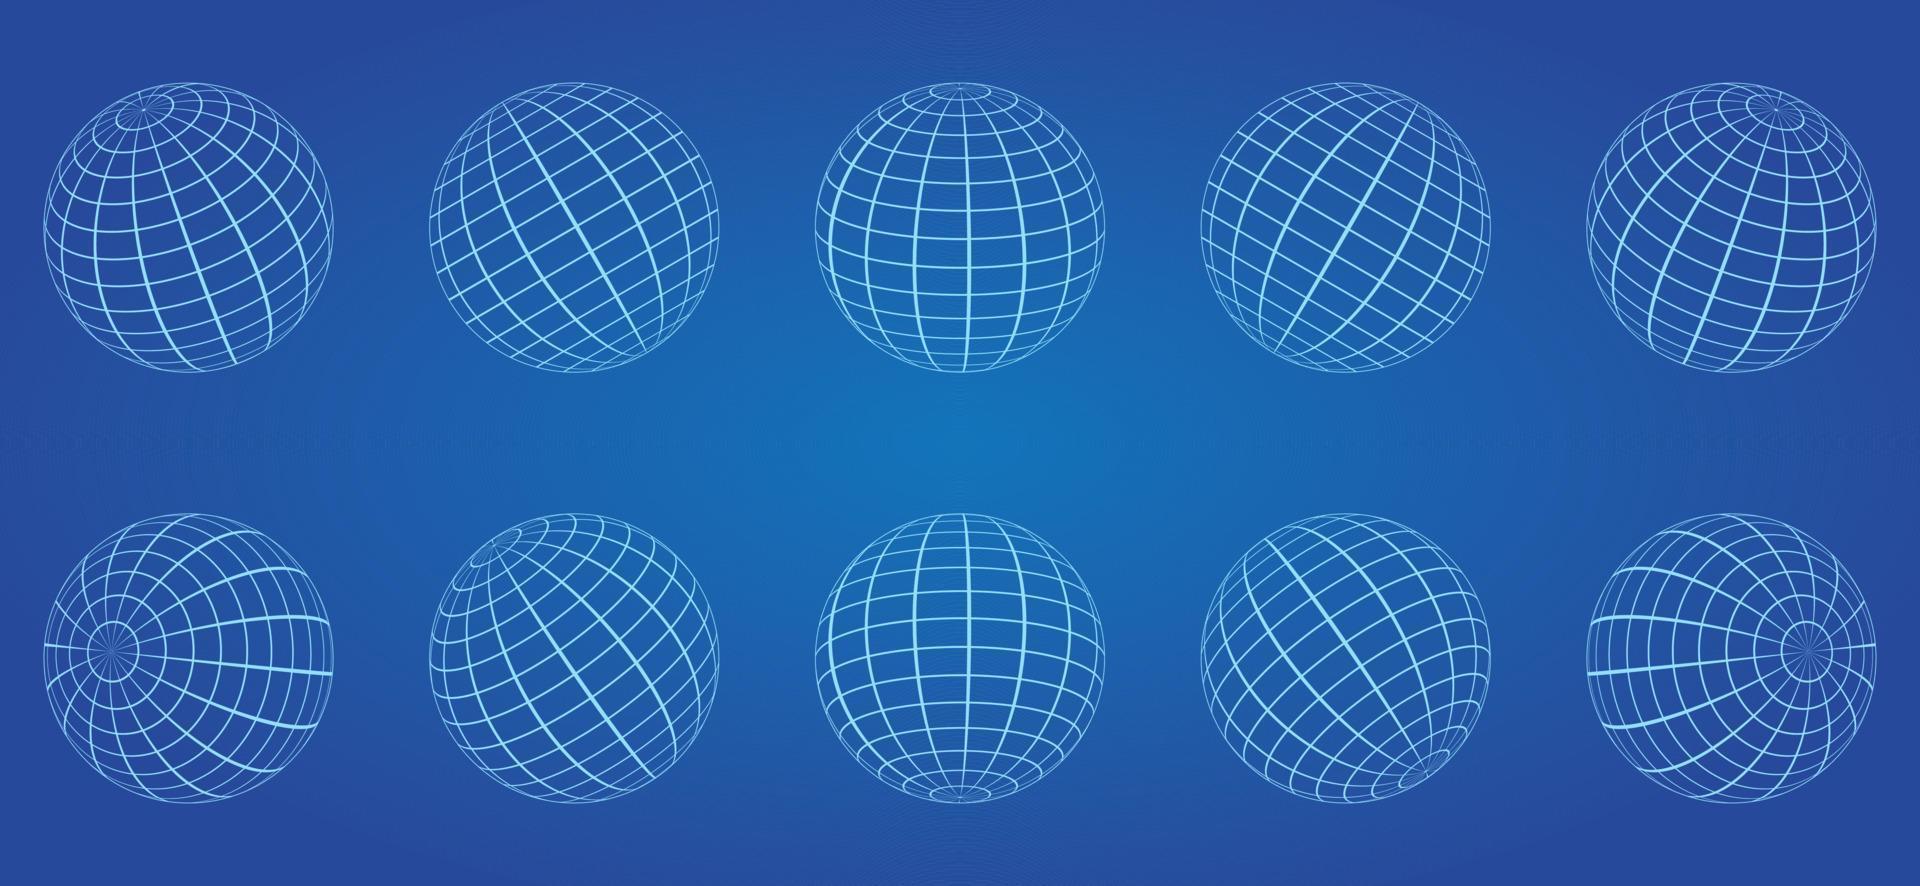 esfera de cuadrícula de globo blanco sobre fondo azul. Latitud de la tierra global del alambre 3d, longitud. línea alámbrica 3d planeta globo. bola de malla de rejilla redonda geométrica. superficie del globo de estructura metálica. vector aislado.